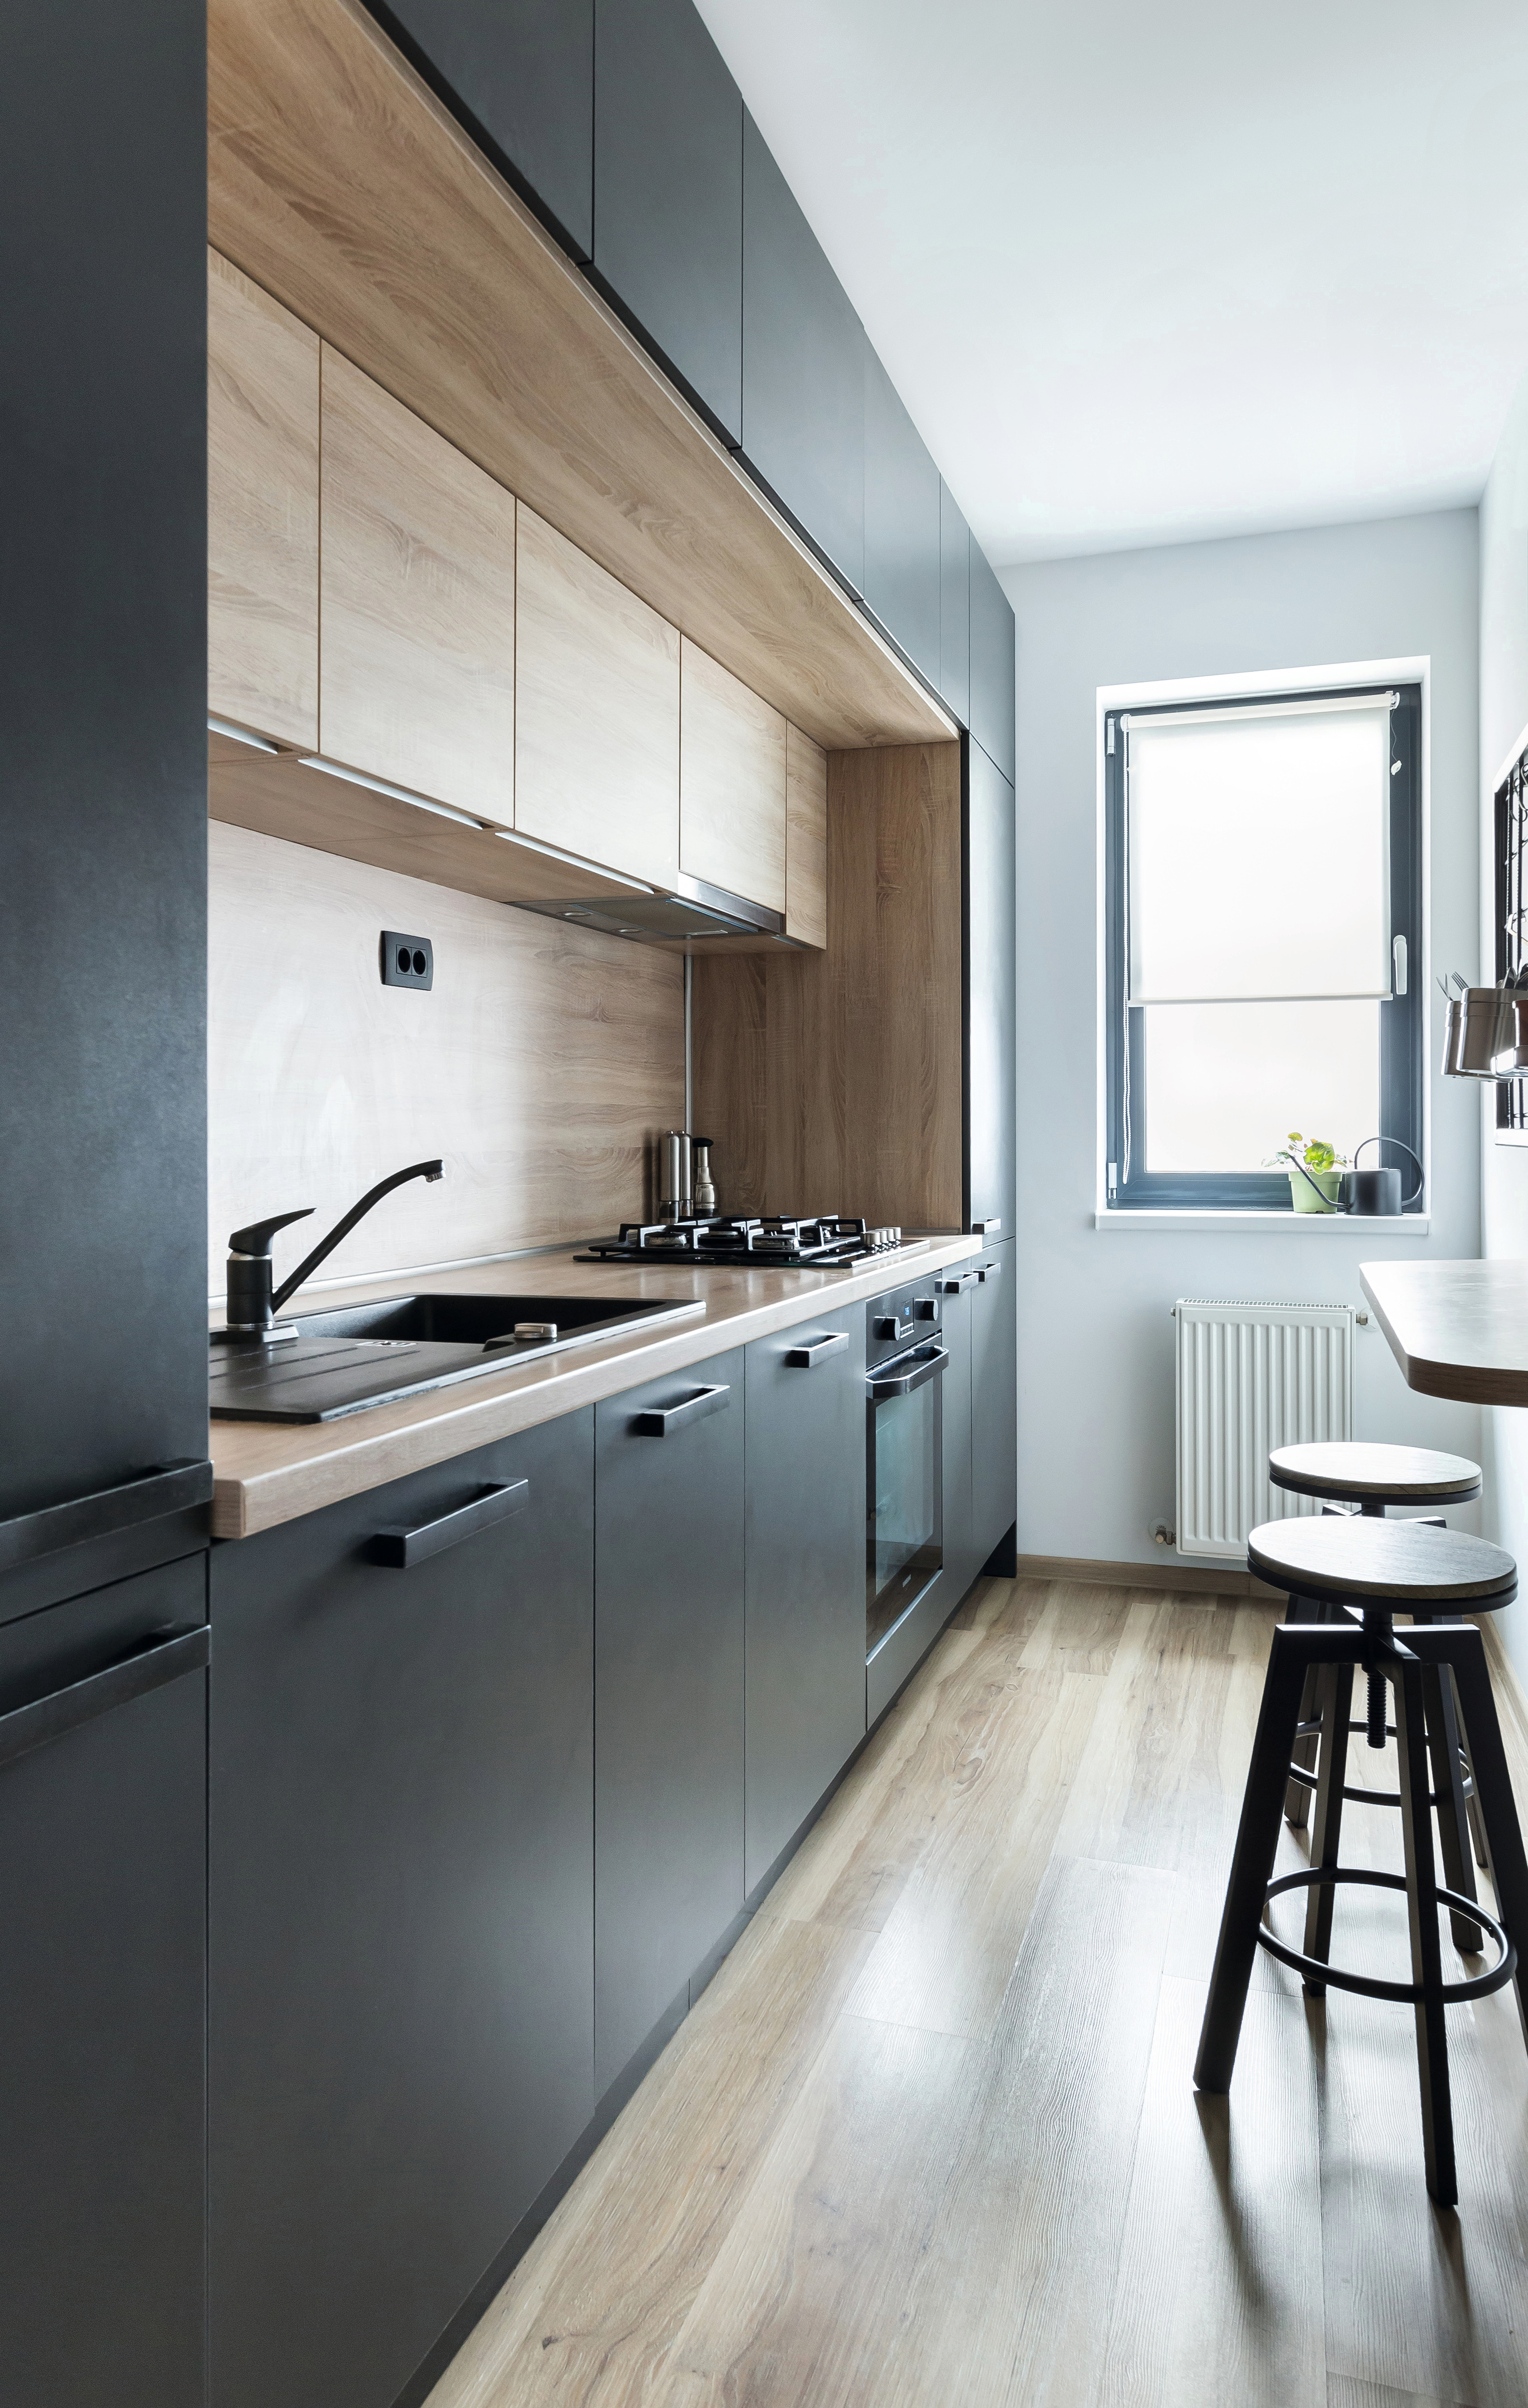 Alegerea potrivită a culorilor și aranjarea geometrică dau bucătăriei un aspect modern.